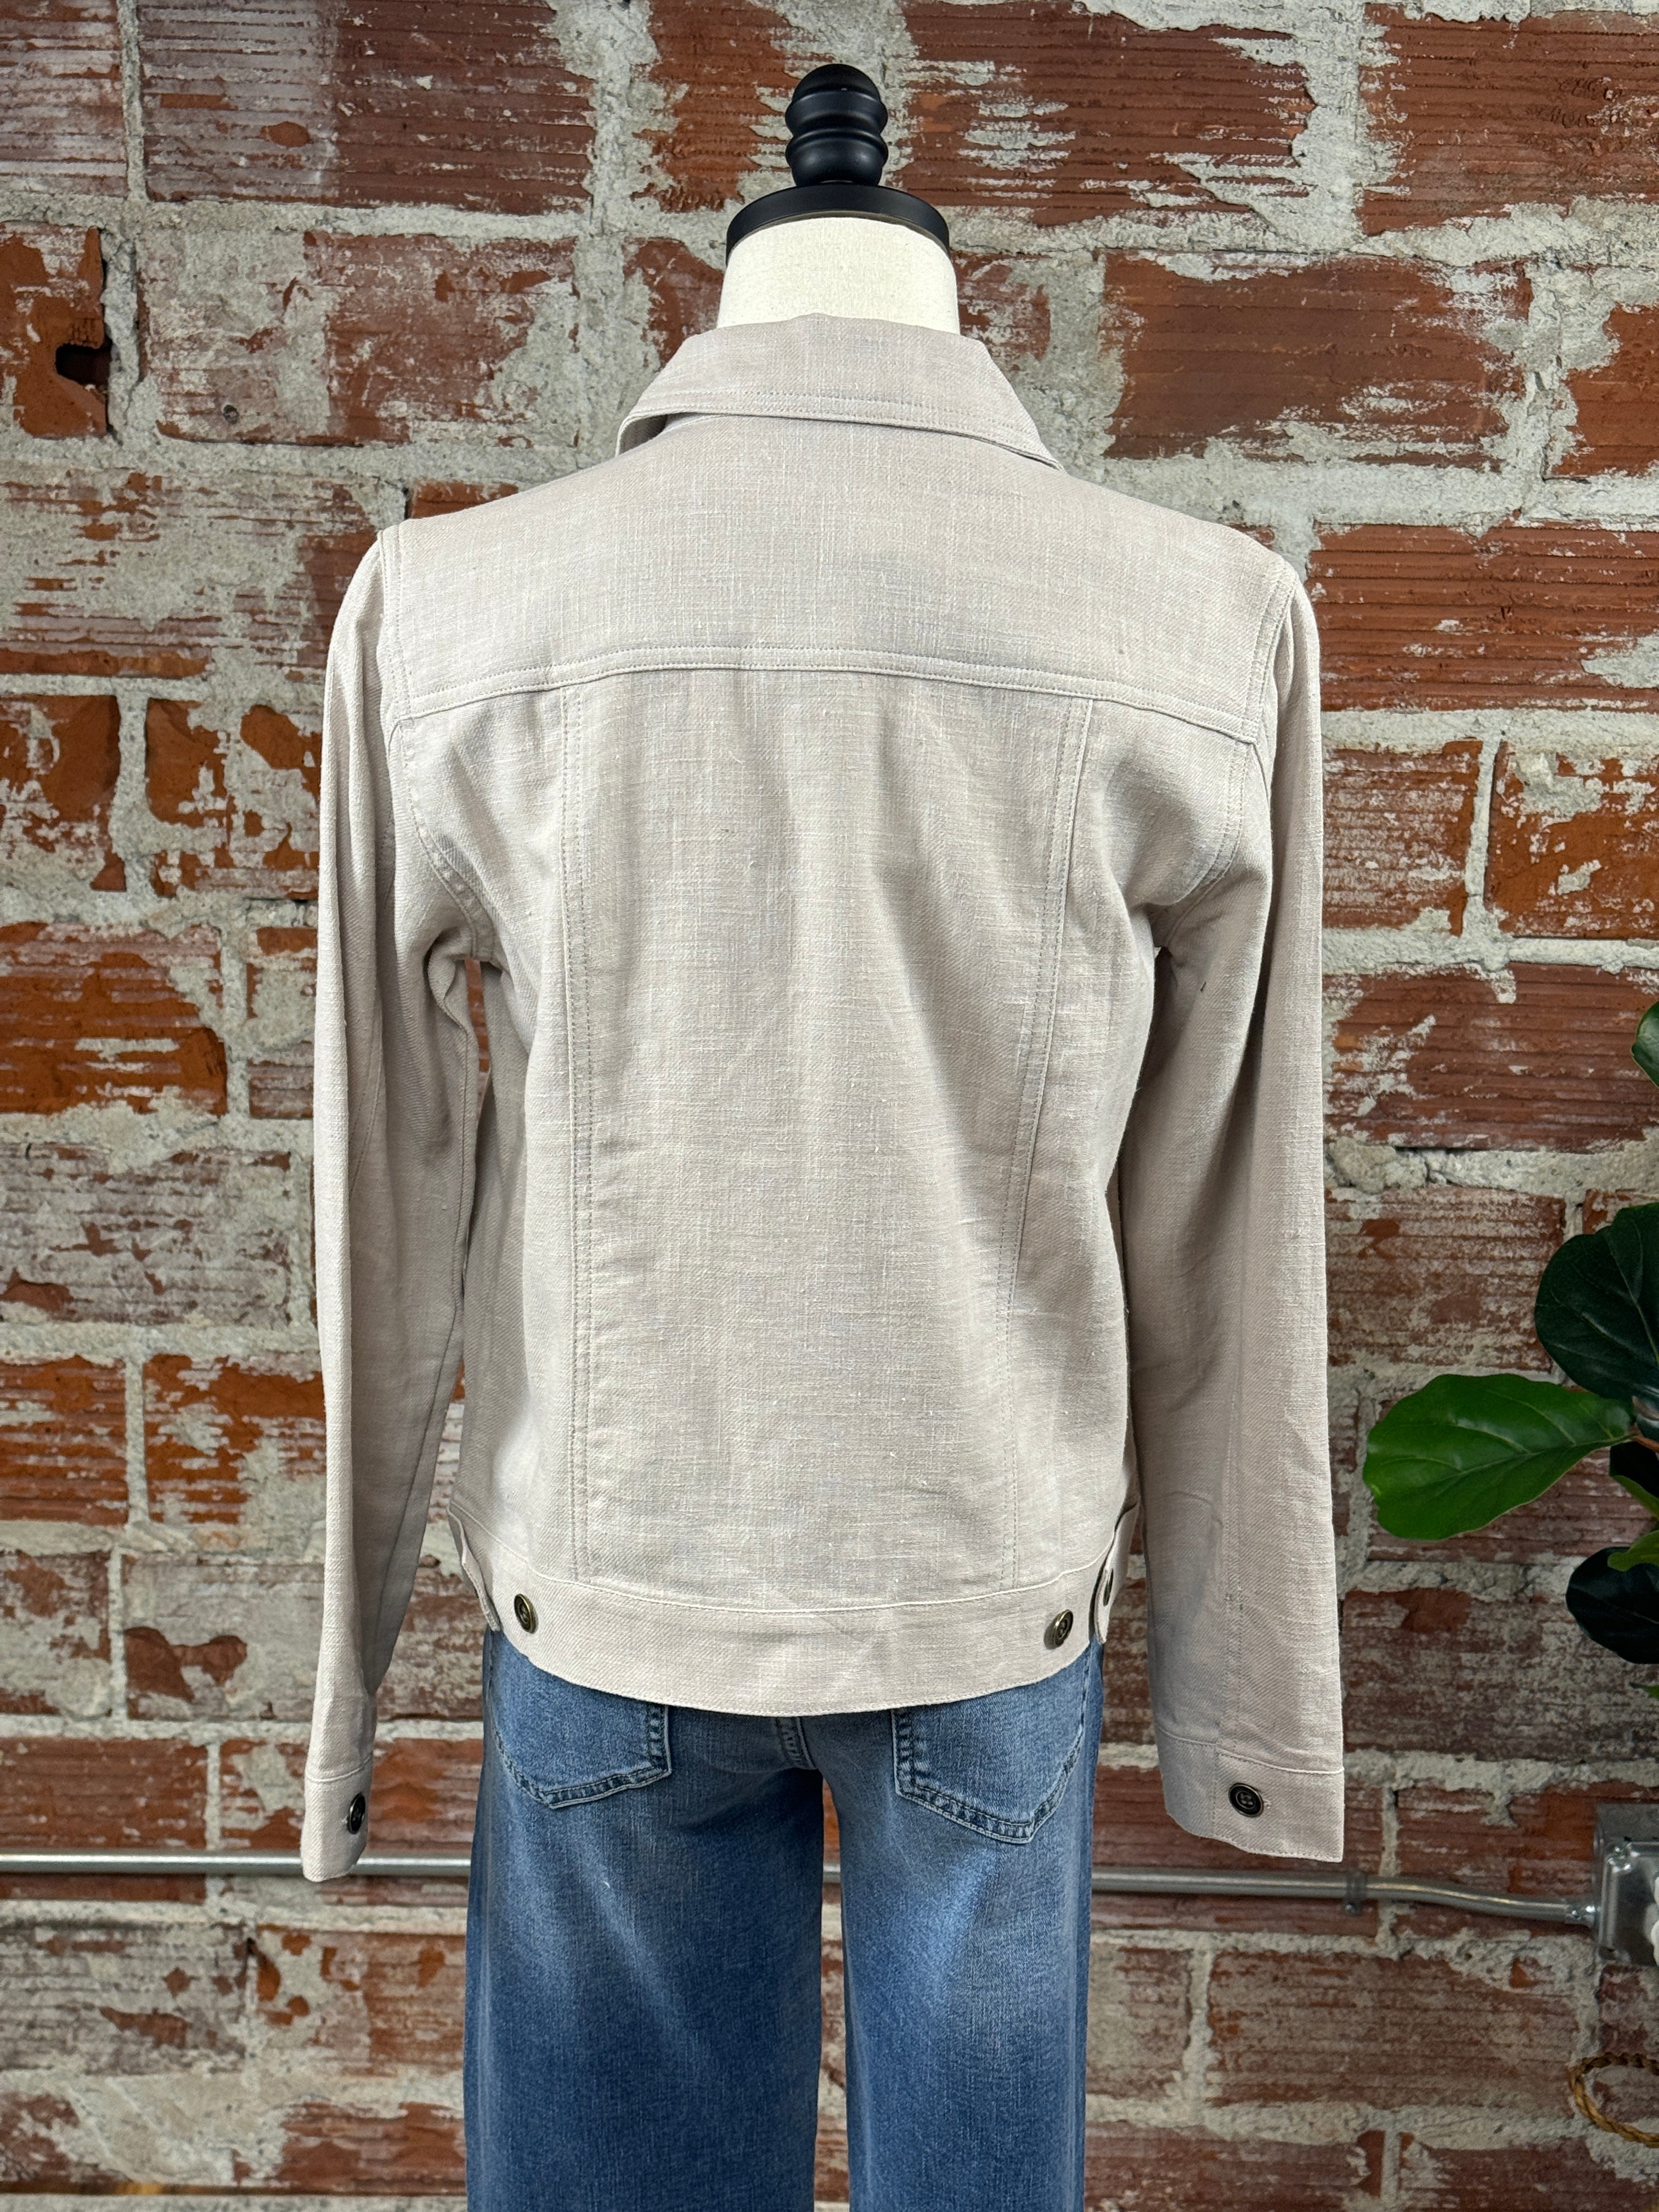 Kennedy Linen Jacket in Earth Grey-141 Outerwear Coats & Jackets-Little Bird Boutique